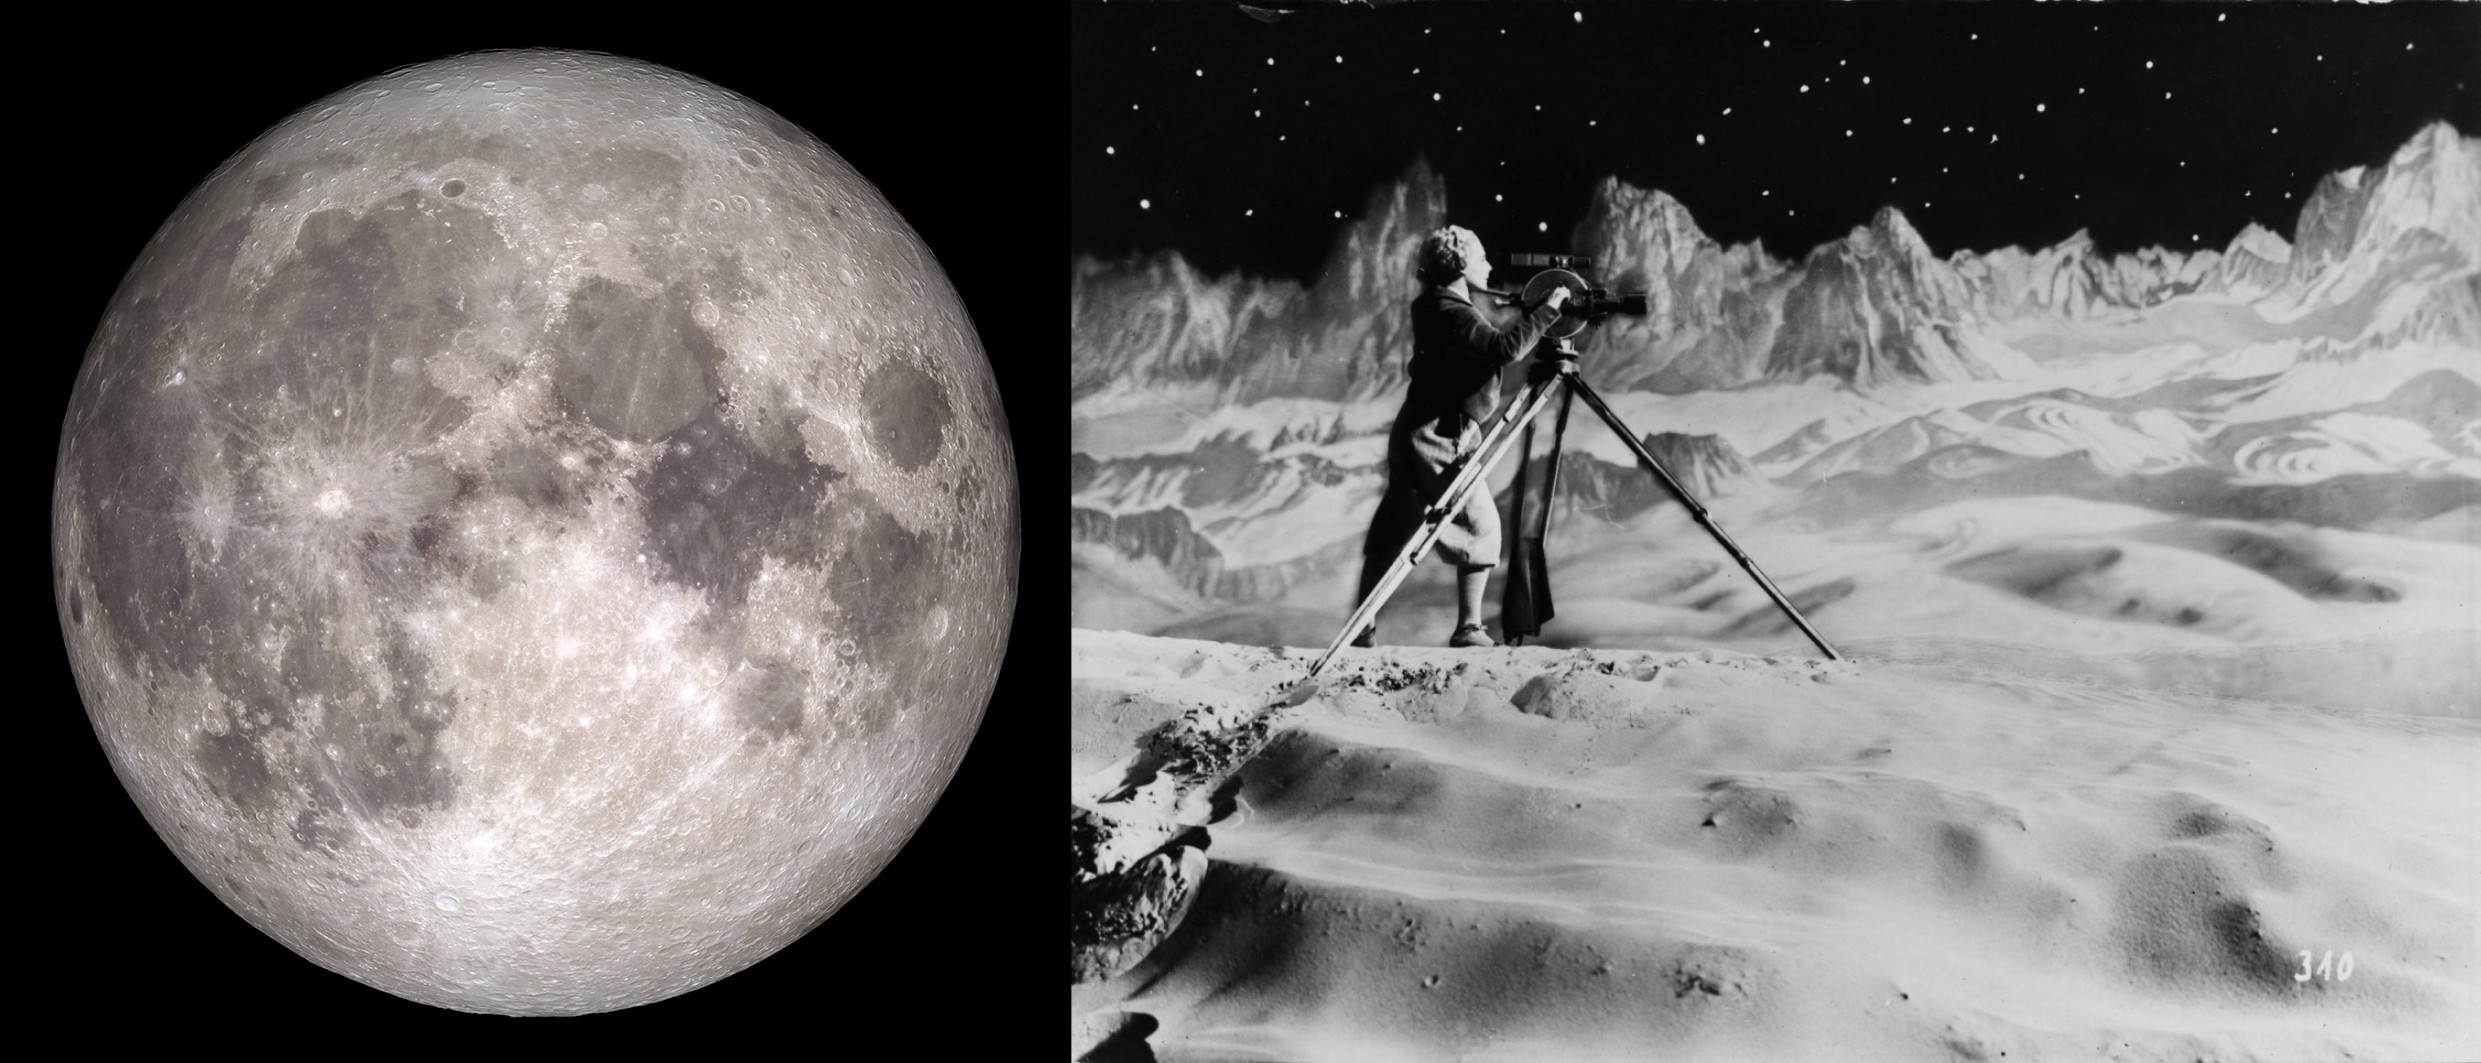 © Moon on Christmas 2015 – NASA/Goddard/Lunar Reconnaissance Orbiter © “La femme sur la lune” de Fritz Lang, 1929